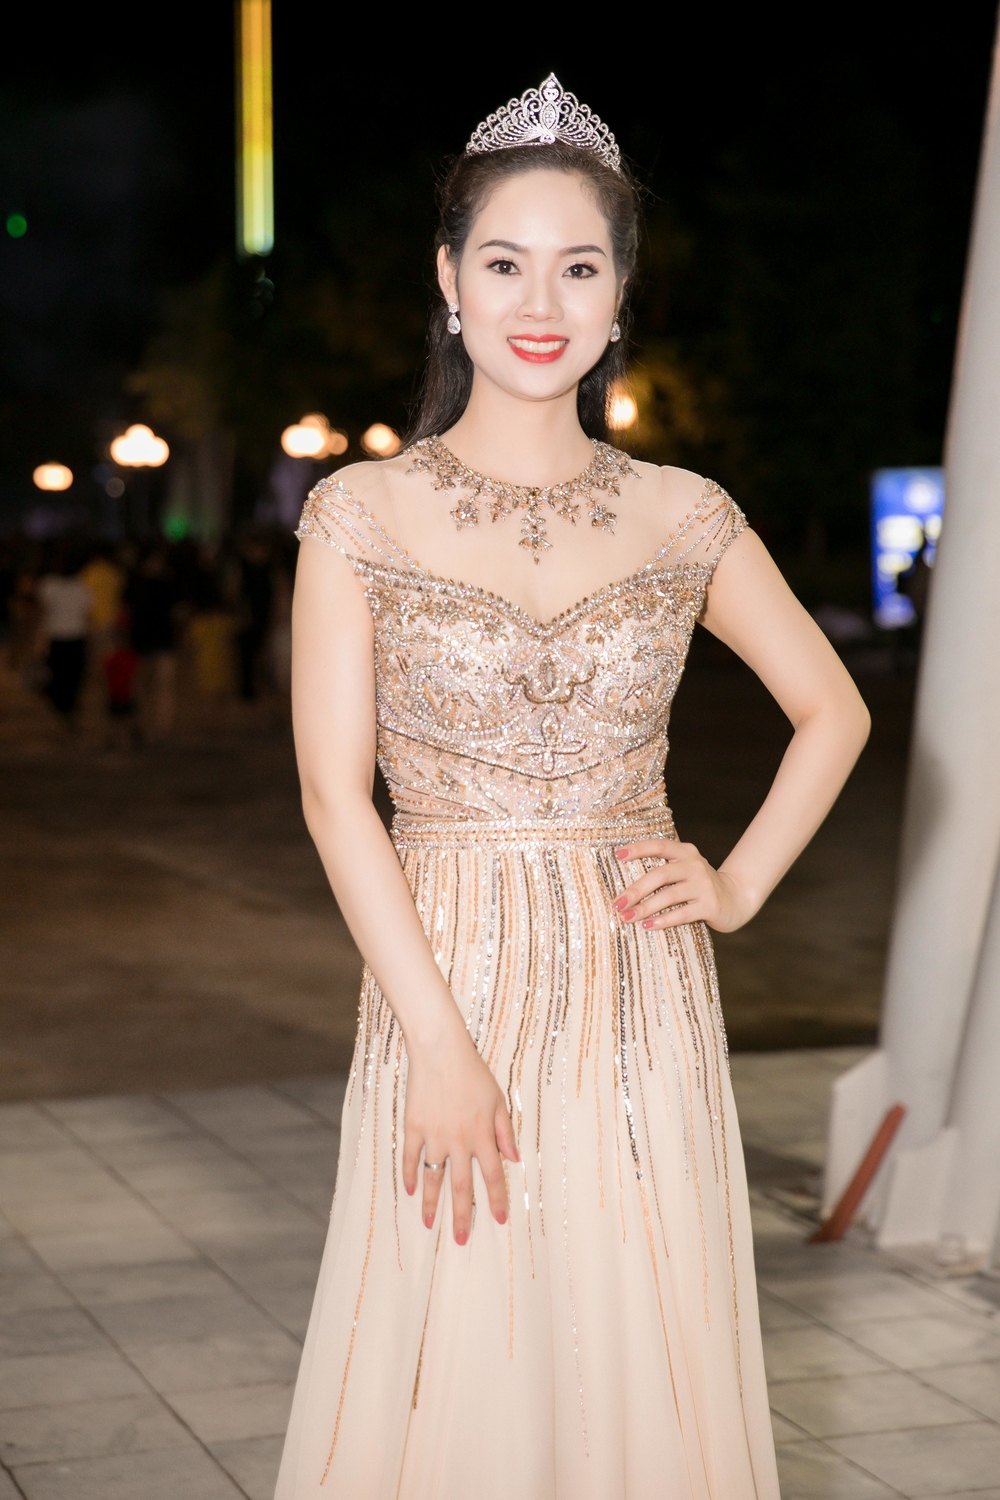 
Hoa hậu Mai Phương cũng dành thời gian xuất hiện tại lễ kỉ niệm 30 năm.